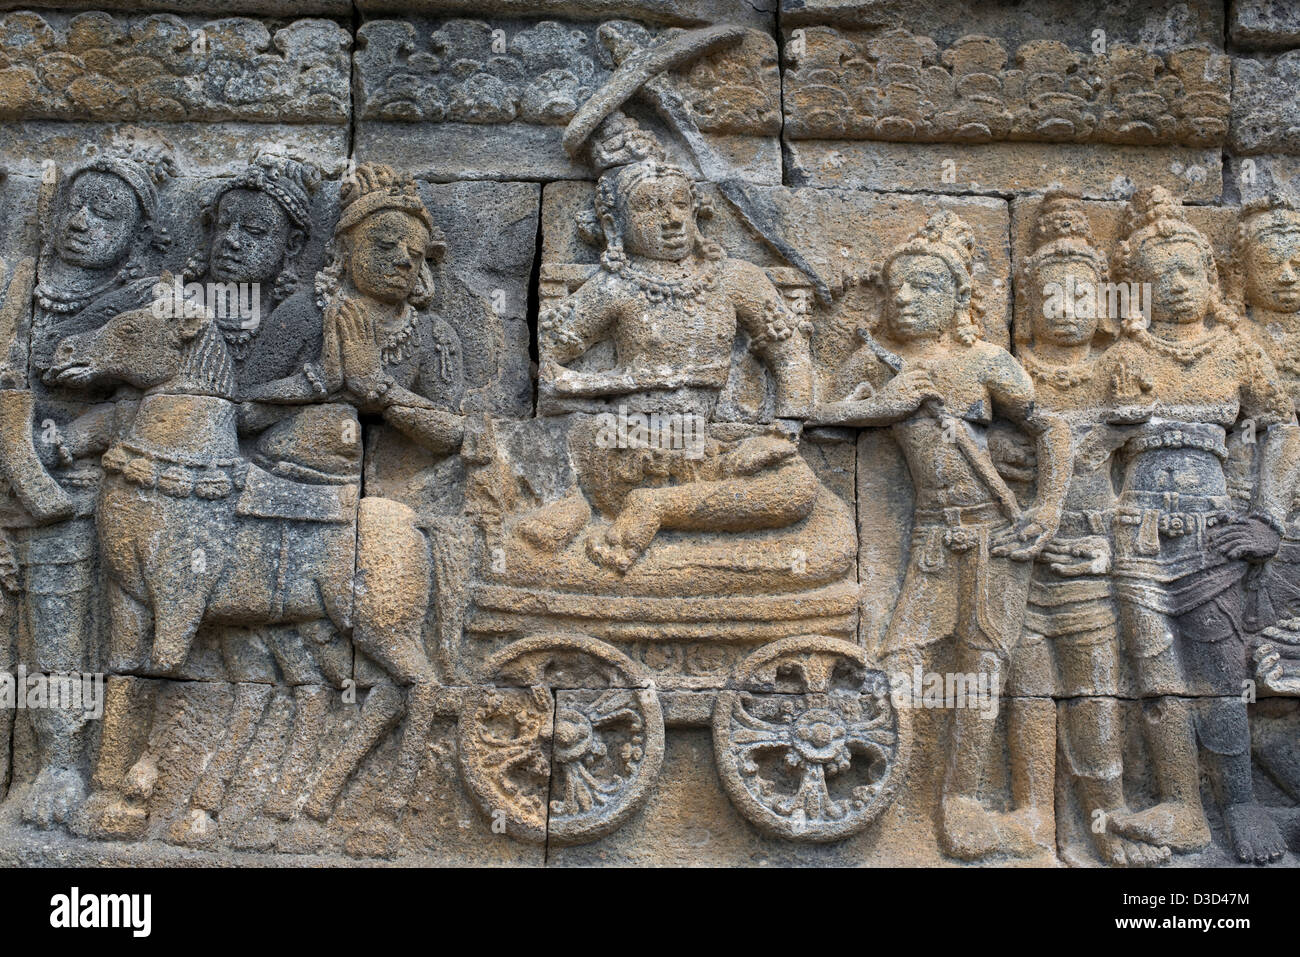 Scolpiti figurine buddista adornano le pareti del tempio Buddhista di Borobudur in Java, Indonesia Foto Stock